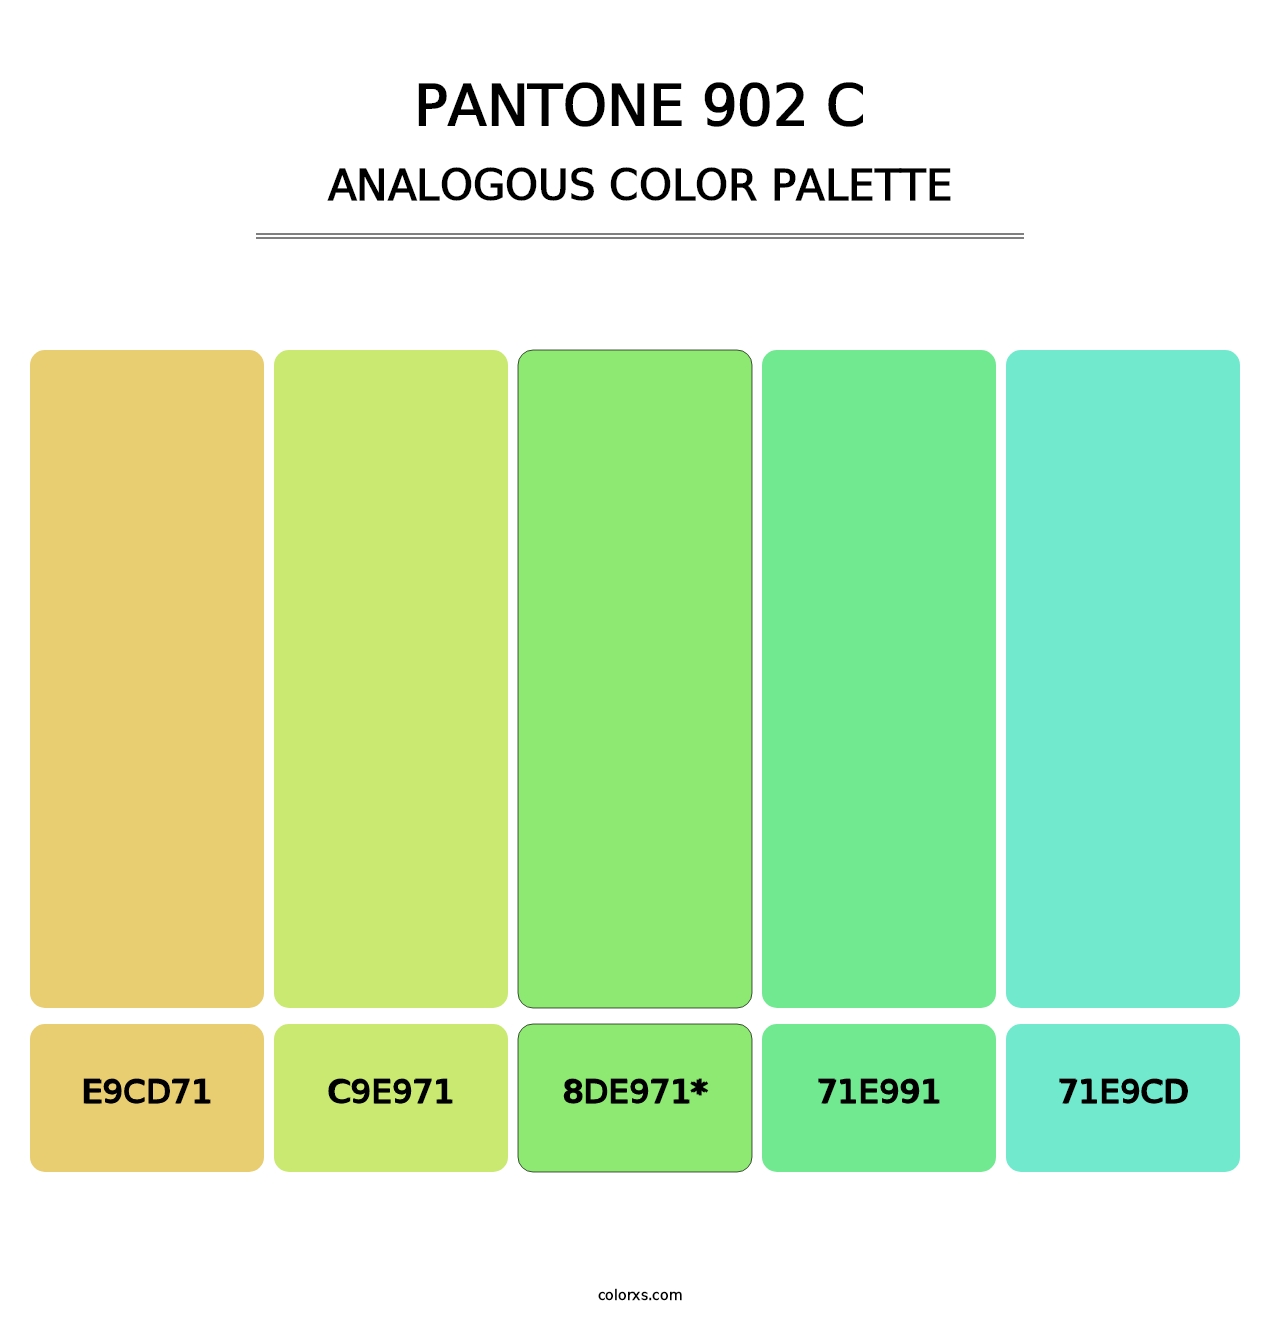 PANTONE 902 C - Analogous Color Palette